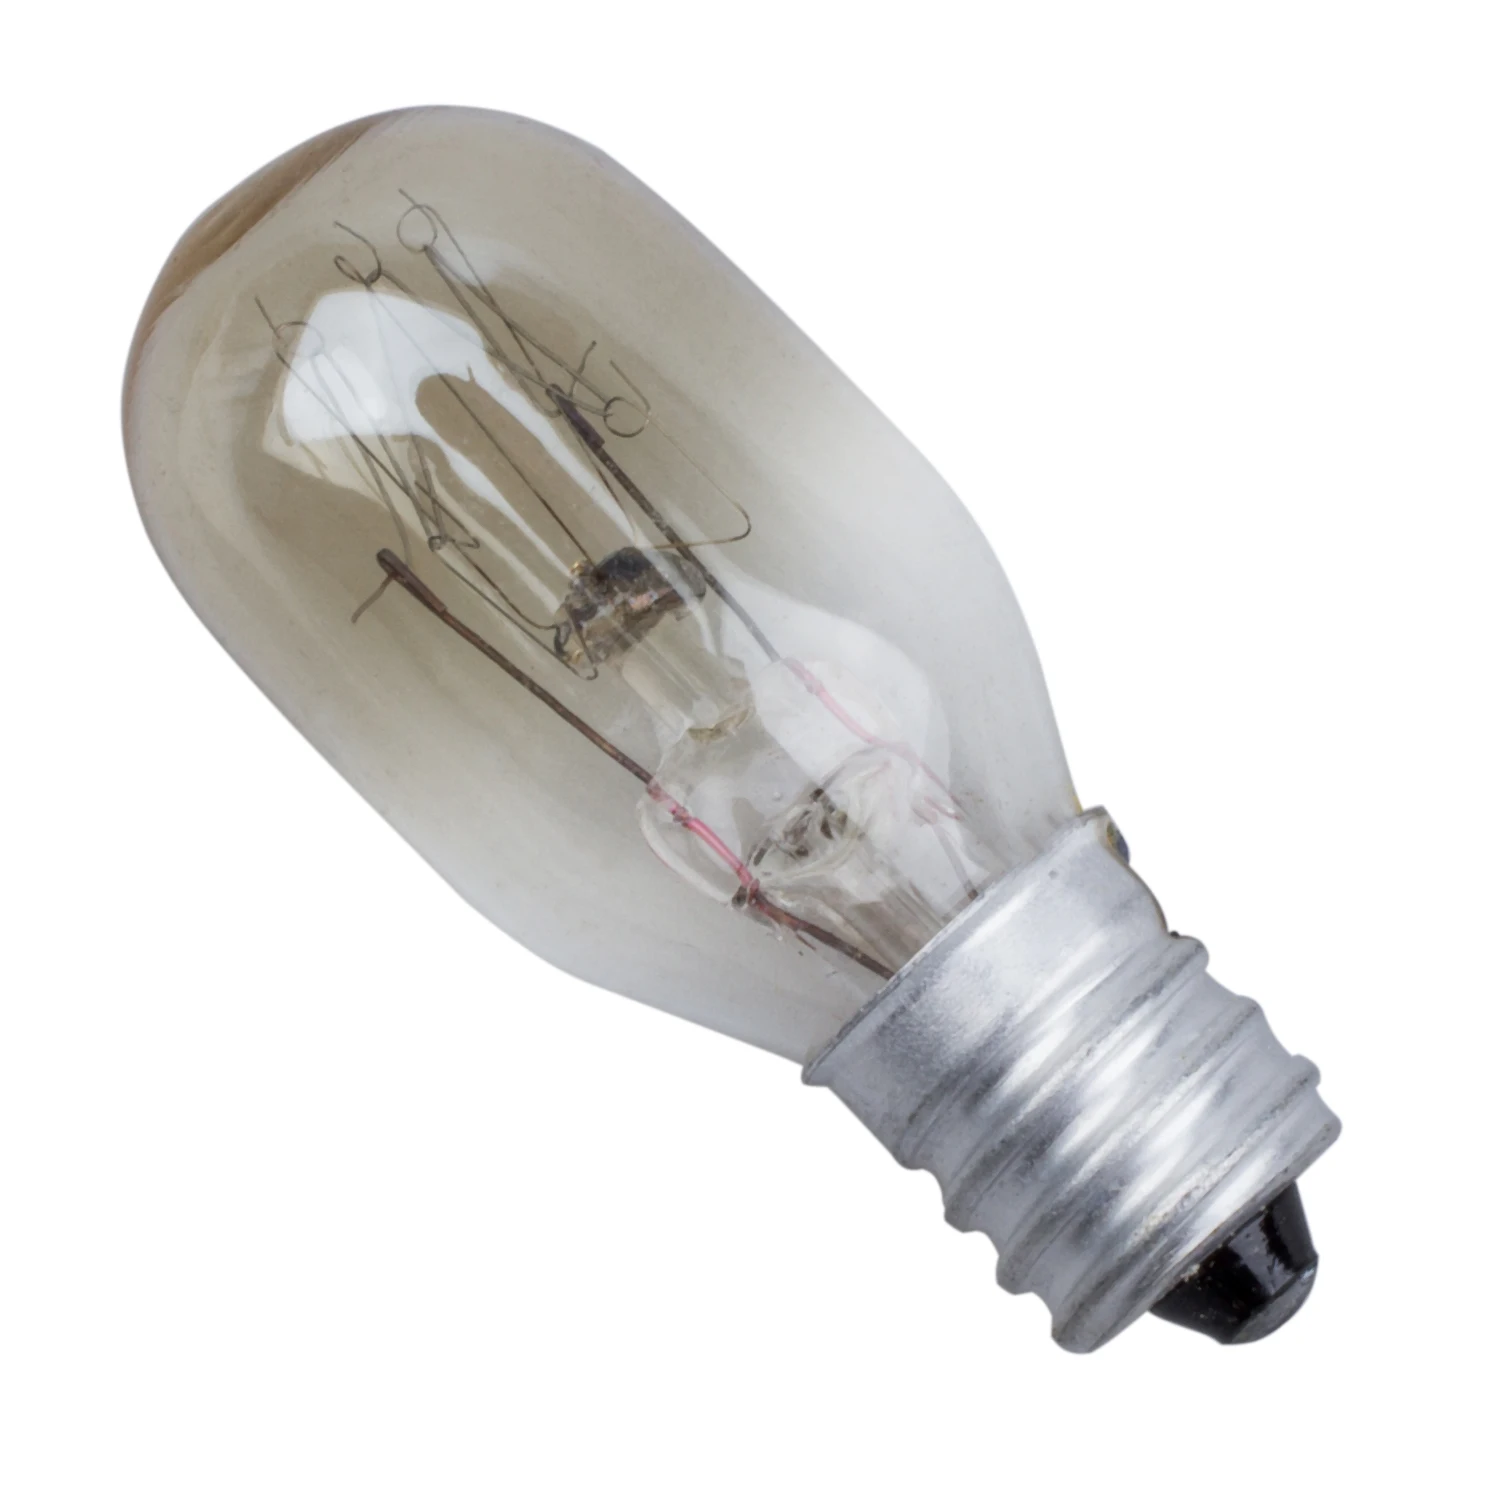 

220-240V 15W T20 Single Tungsten Lamp E14 Screw Base Refrigerator Bulb